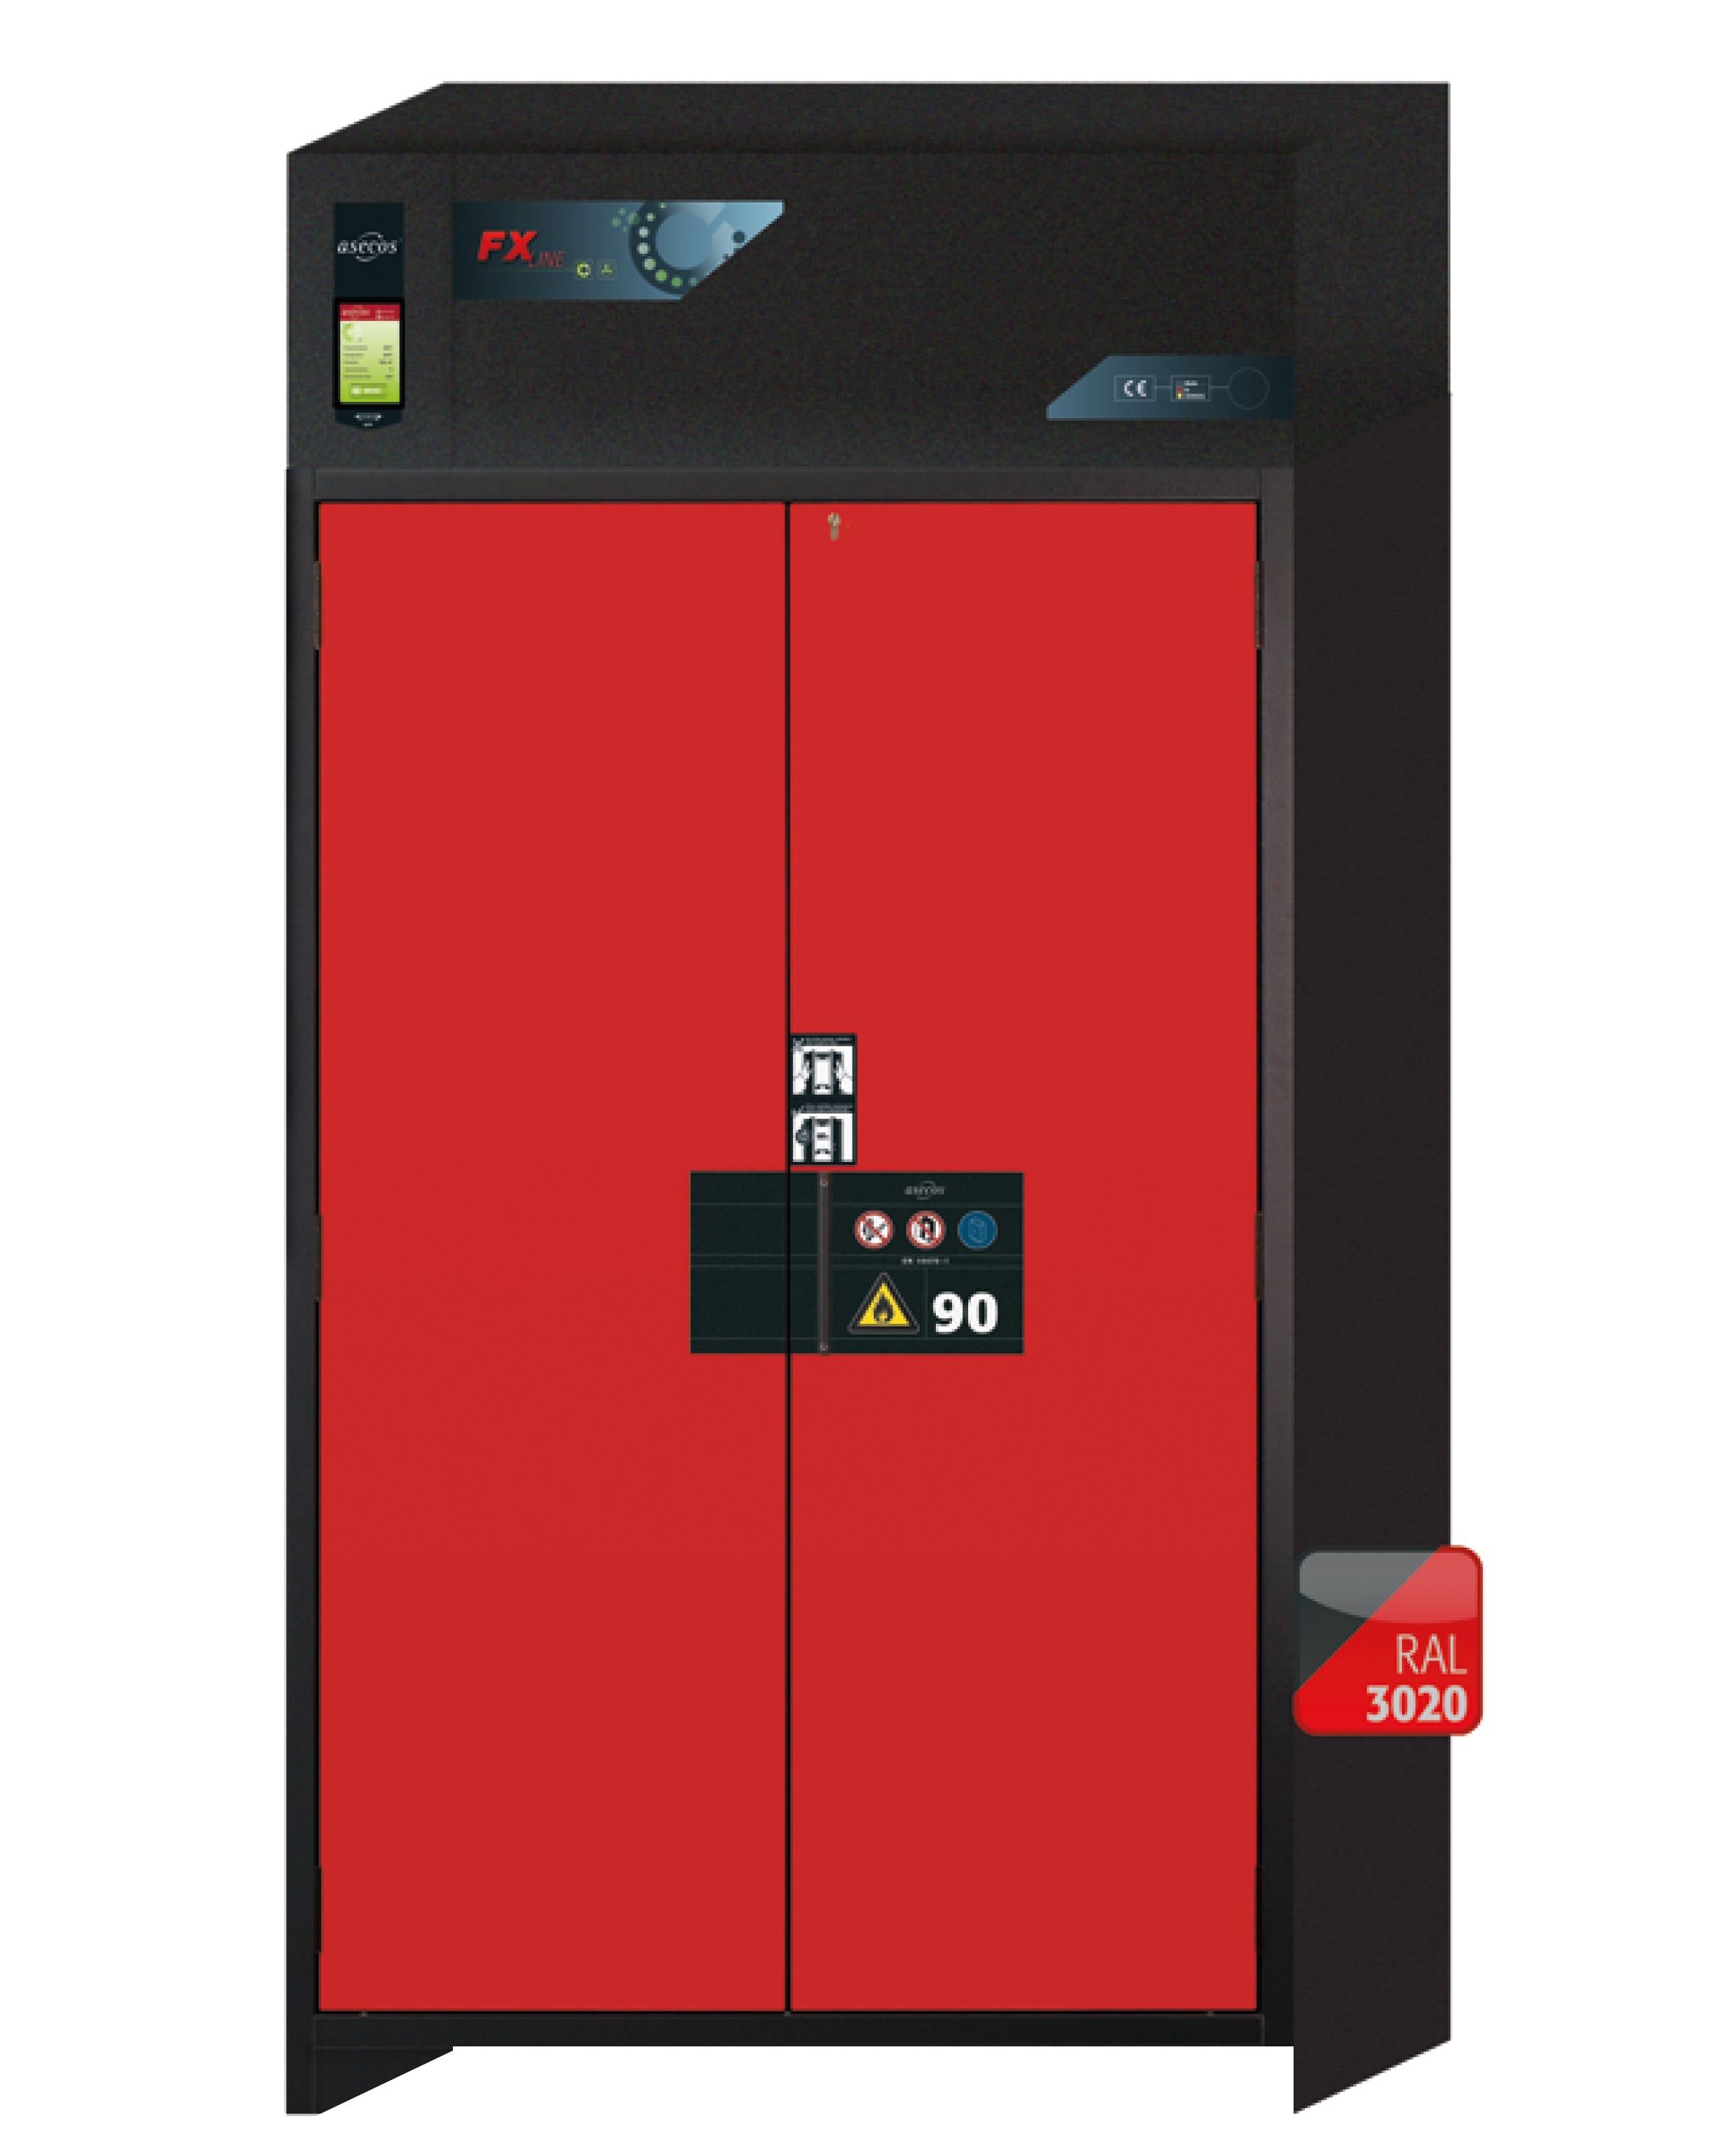 Armoire de filtration d'air de type 90 FX-PEGASUS-90 modèle FX90.229.120.WDAC en rouge signalisation RAL 3020 avec 4x étagères standard (tôle d'acier)